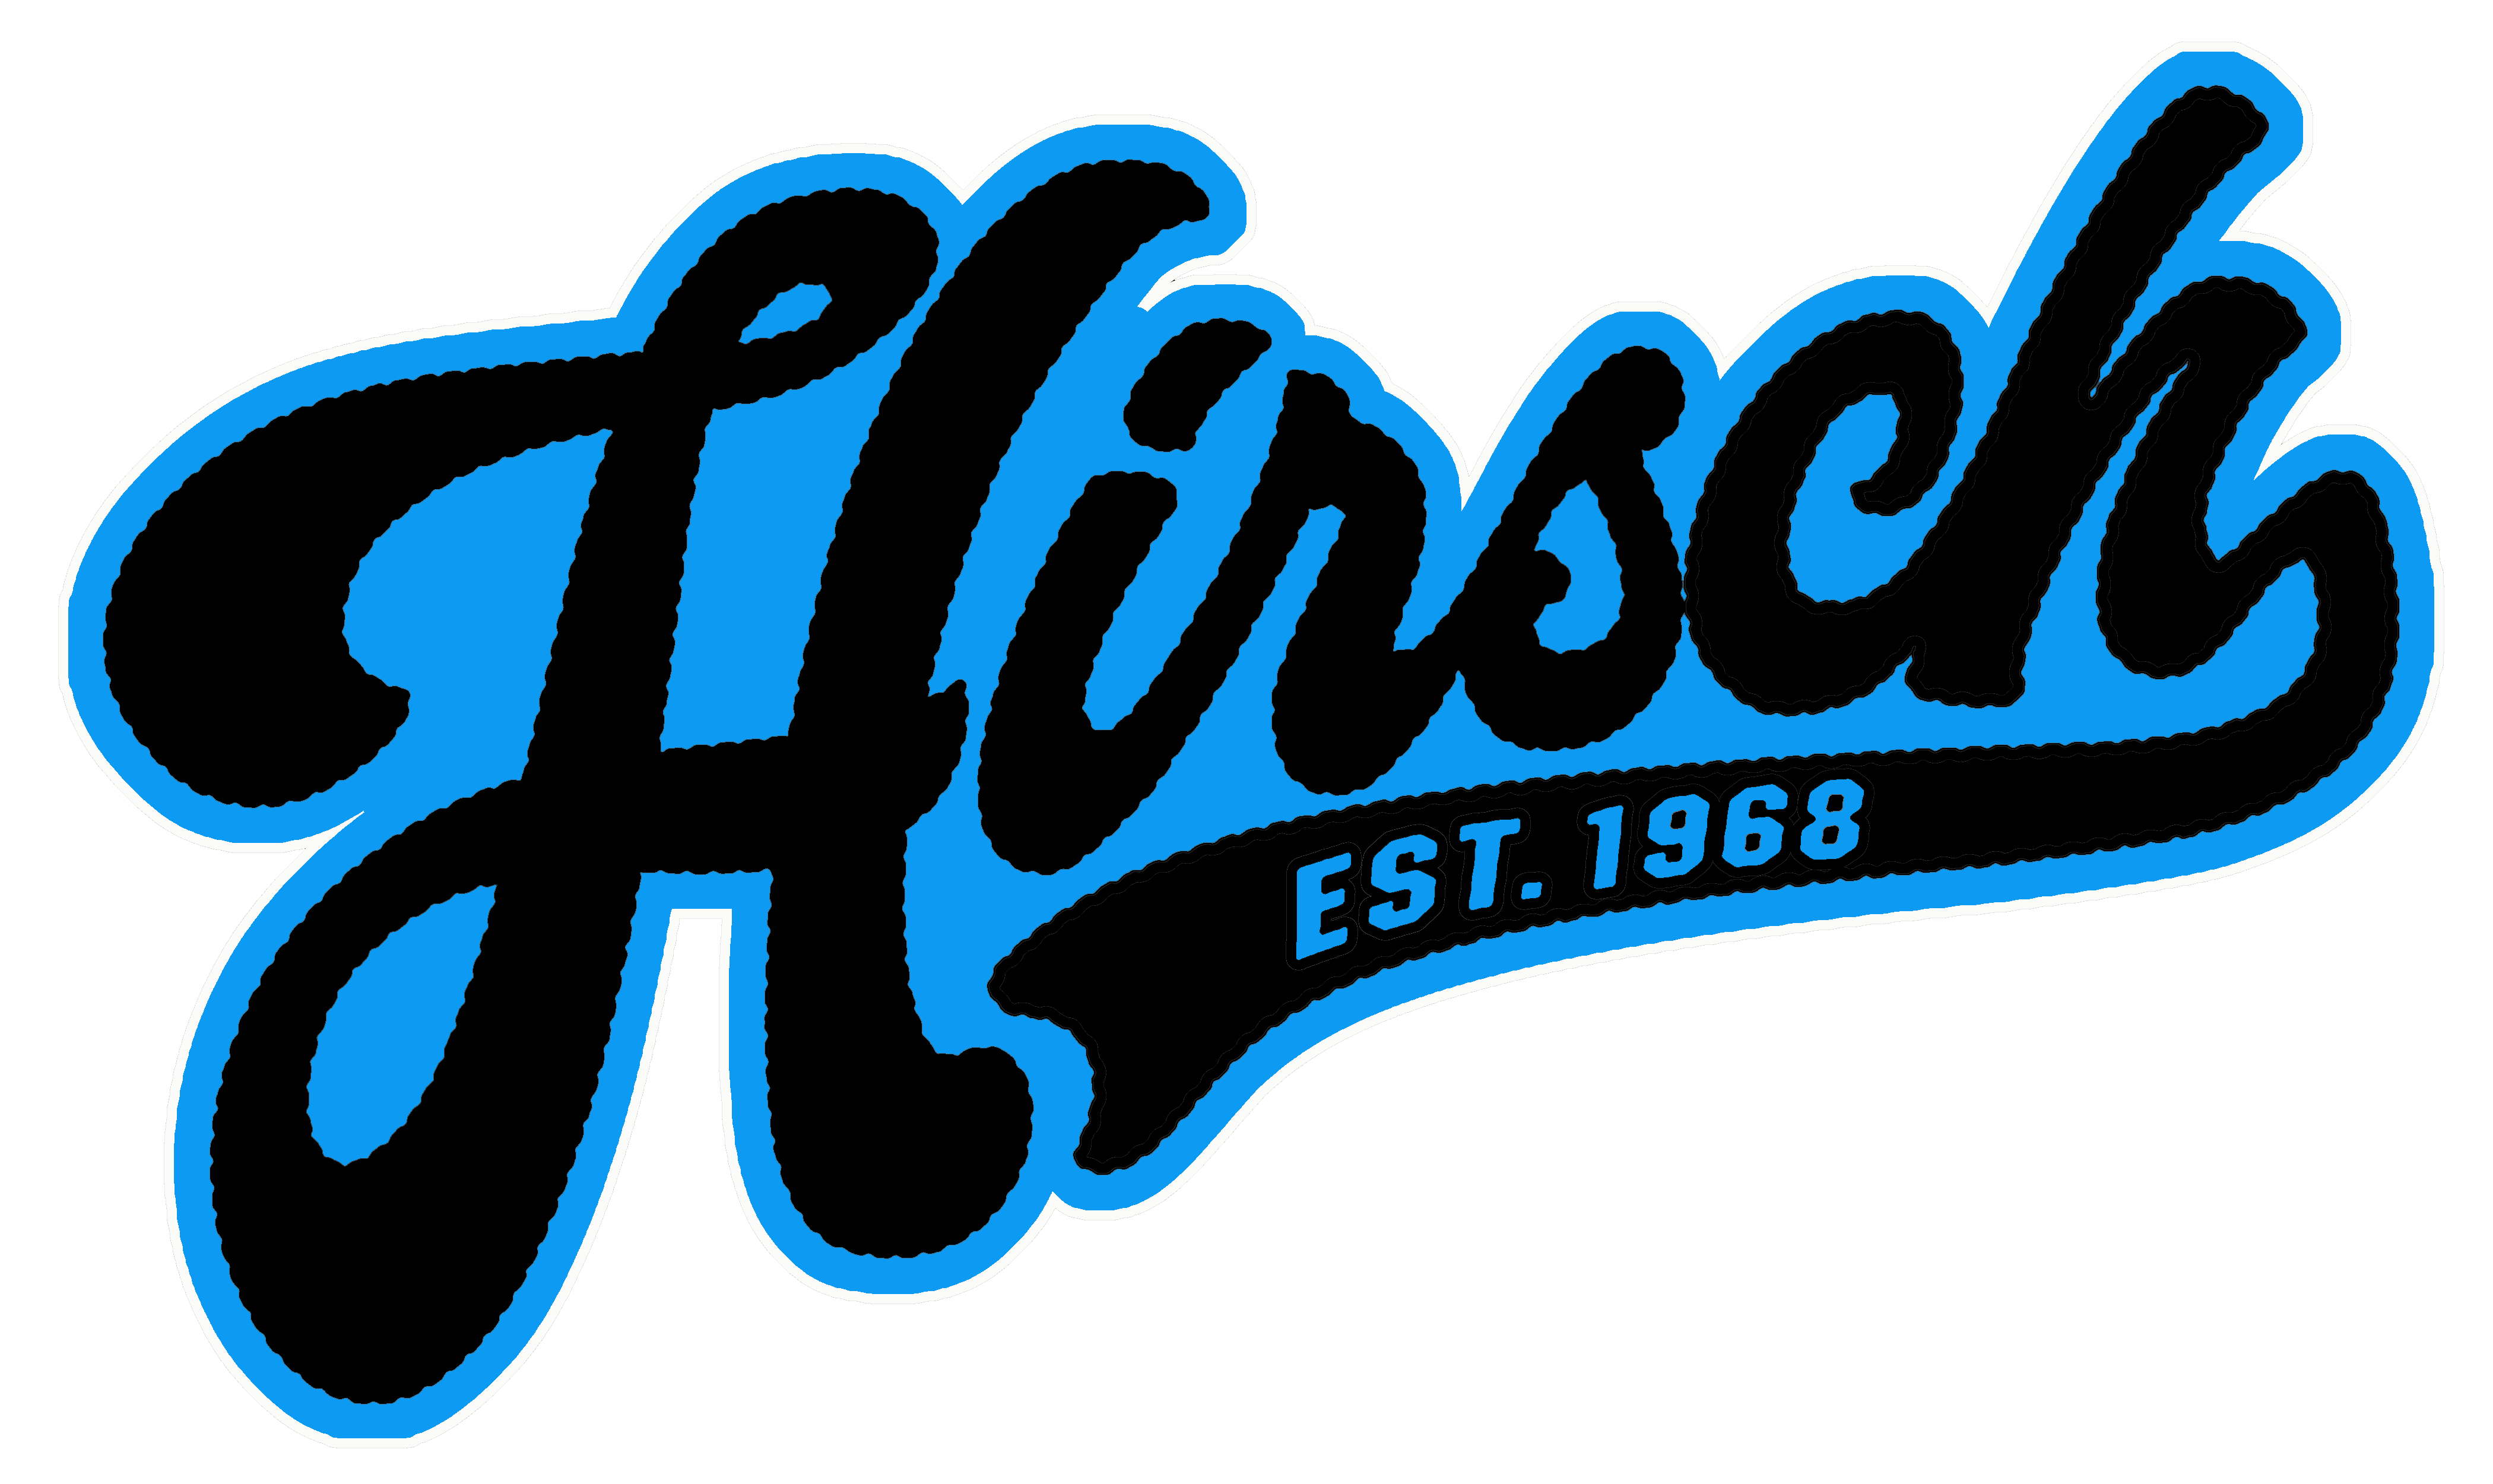 Detail Hirsch Logo Nomer 4